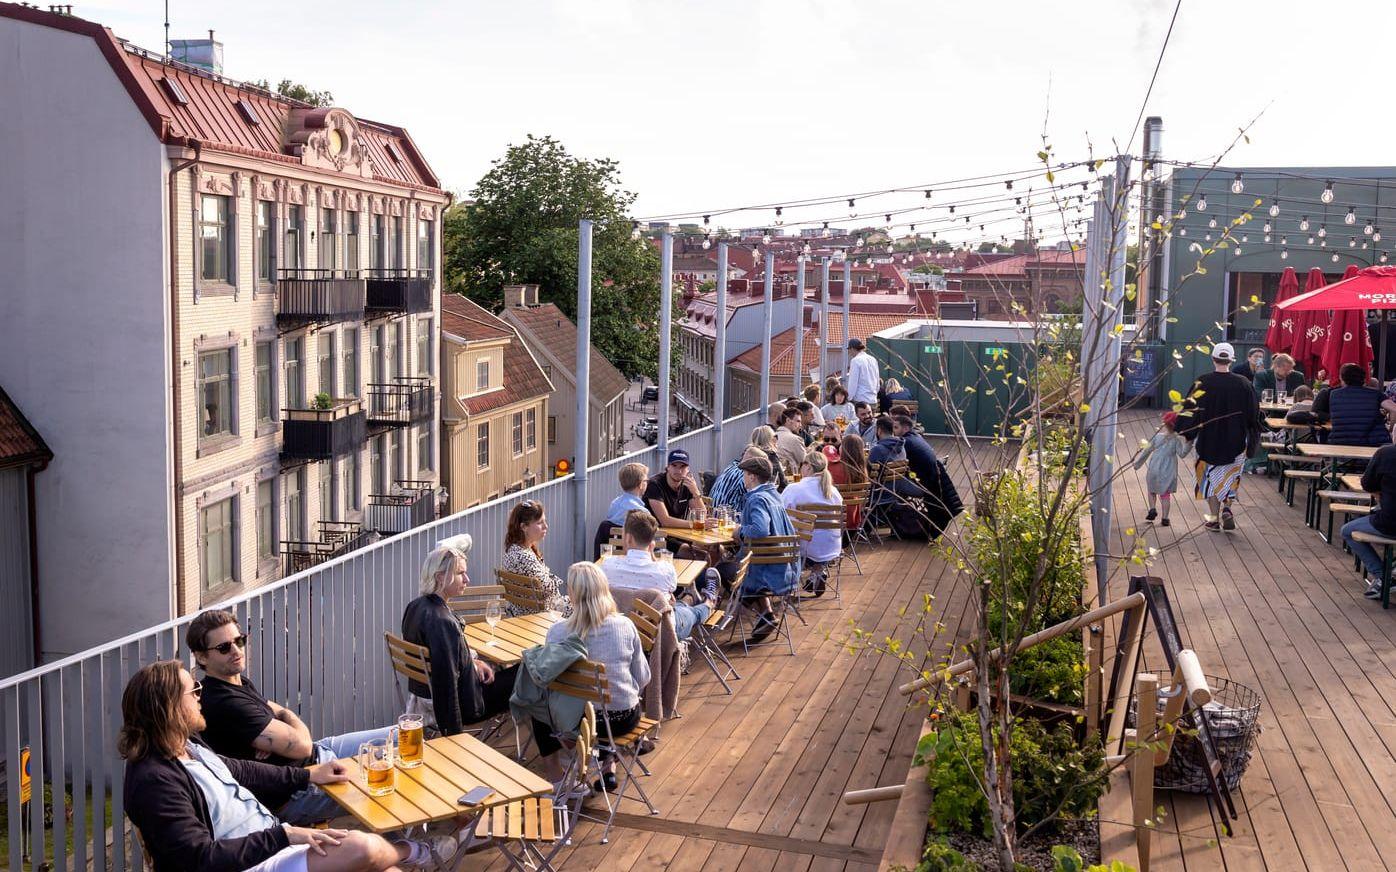 Pizzeria Morenos takterrass vid Stigbergstorget är en enorm biergarten.